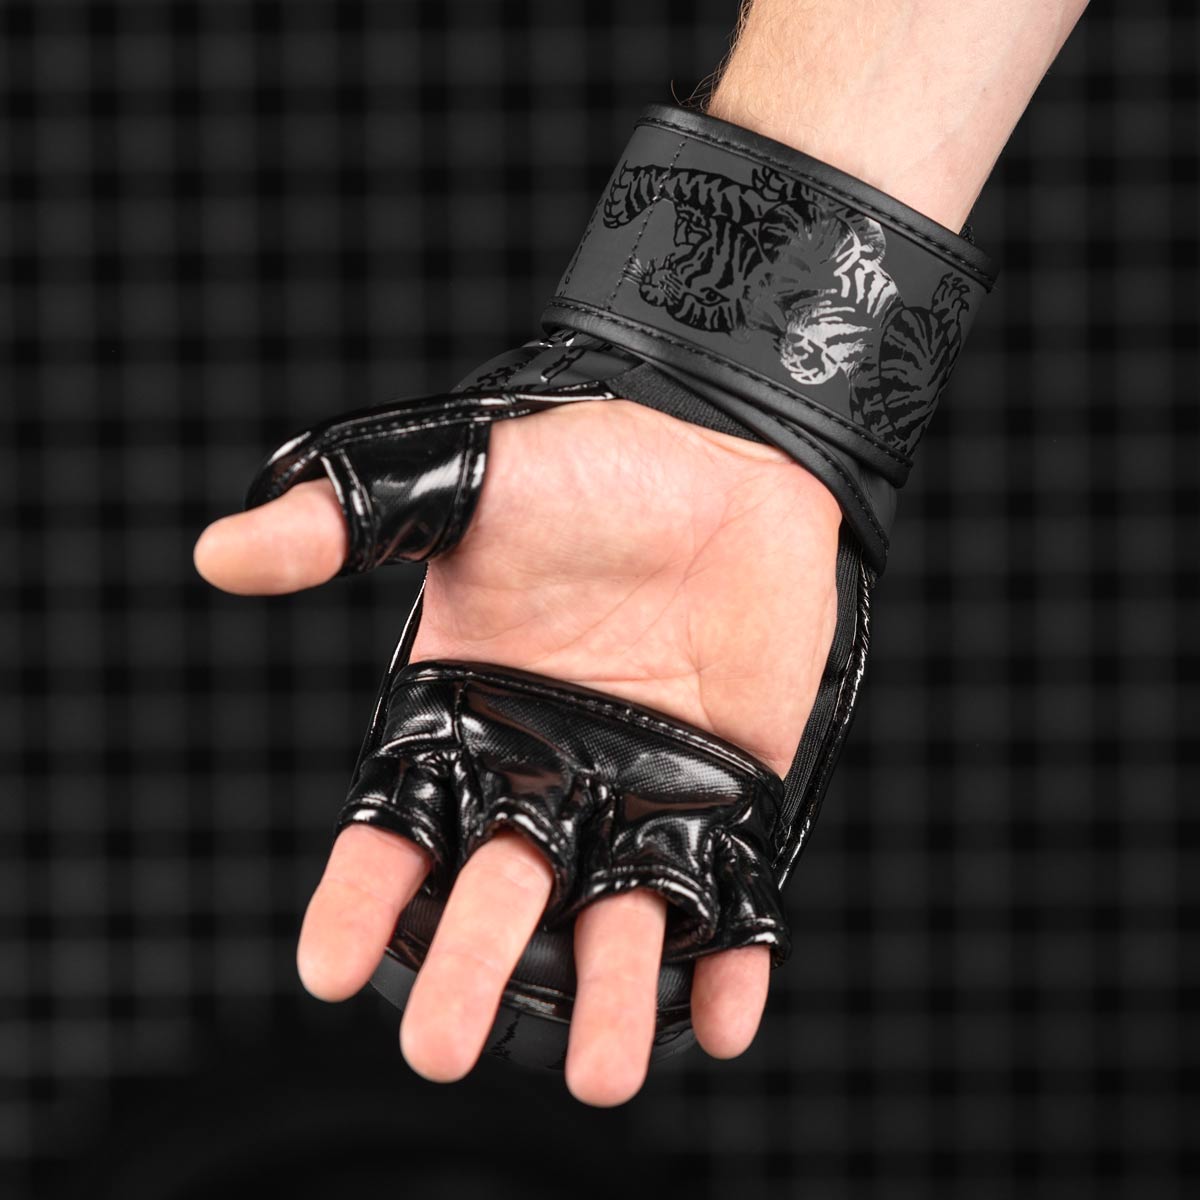 Die Phantom Muay Thai Sparringshandschuhe verfügen über eine perfekte Passform und eine offene Handfläche um Greifen zu können. 